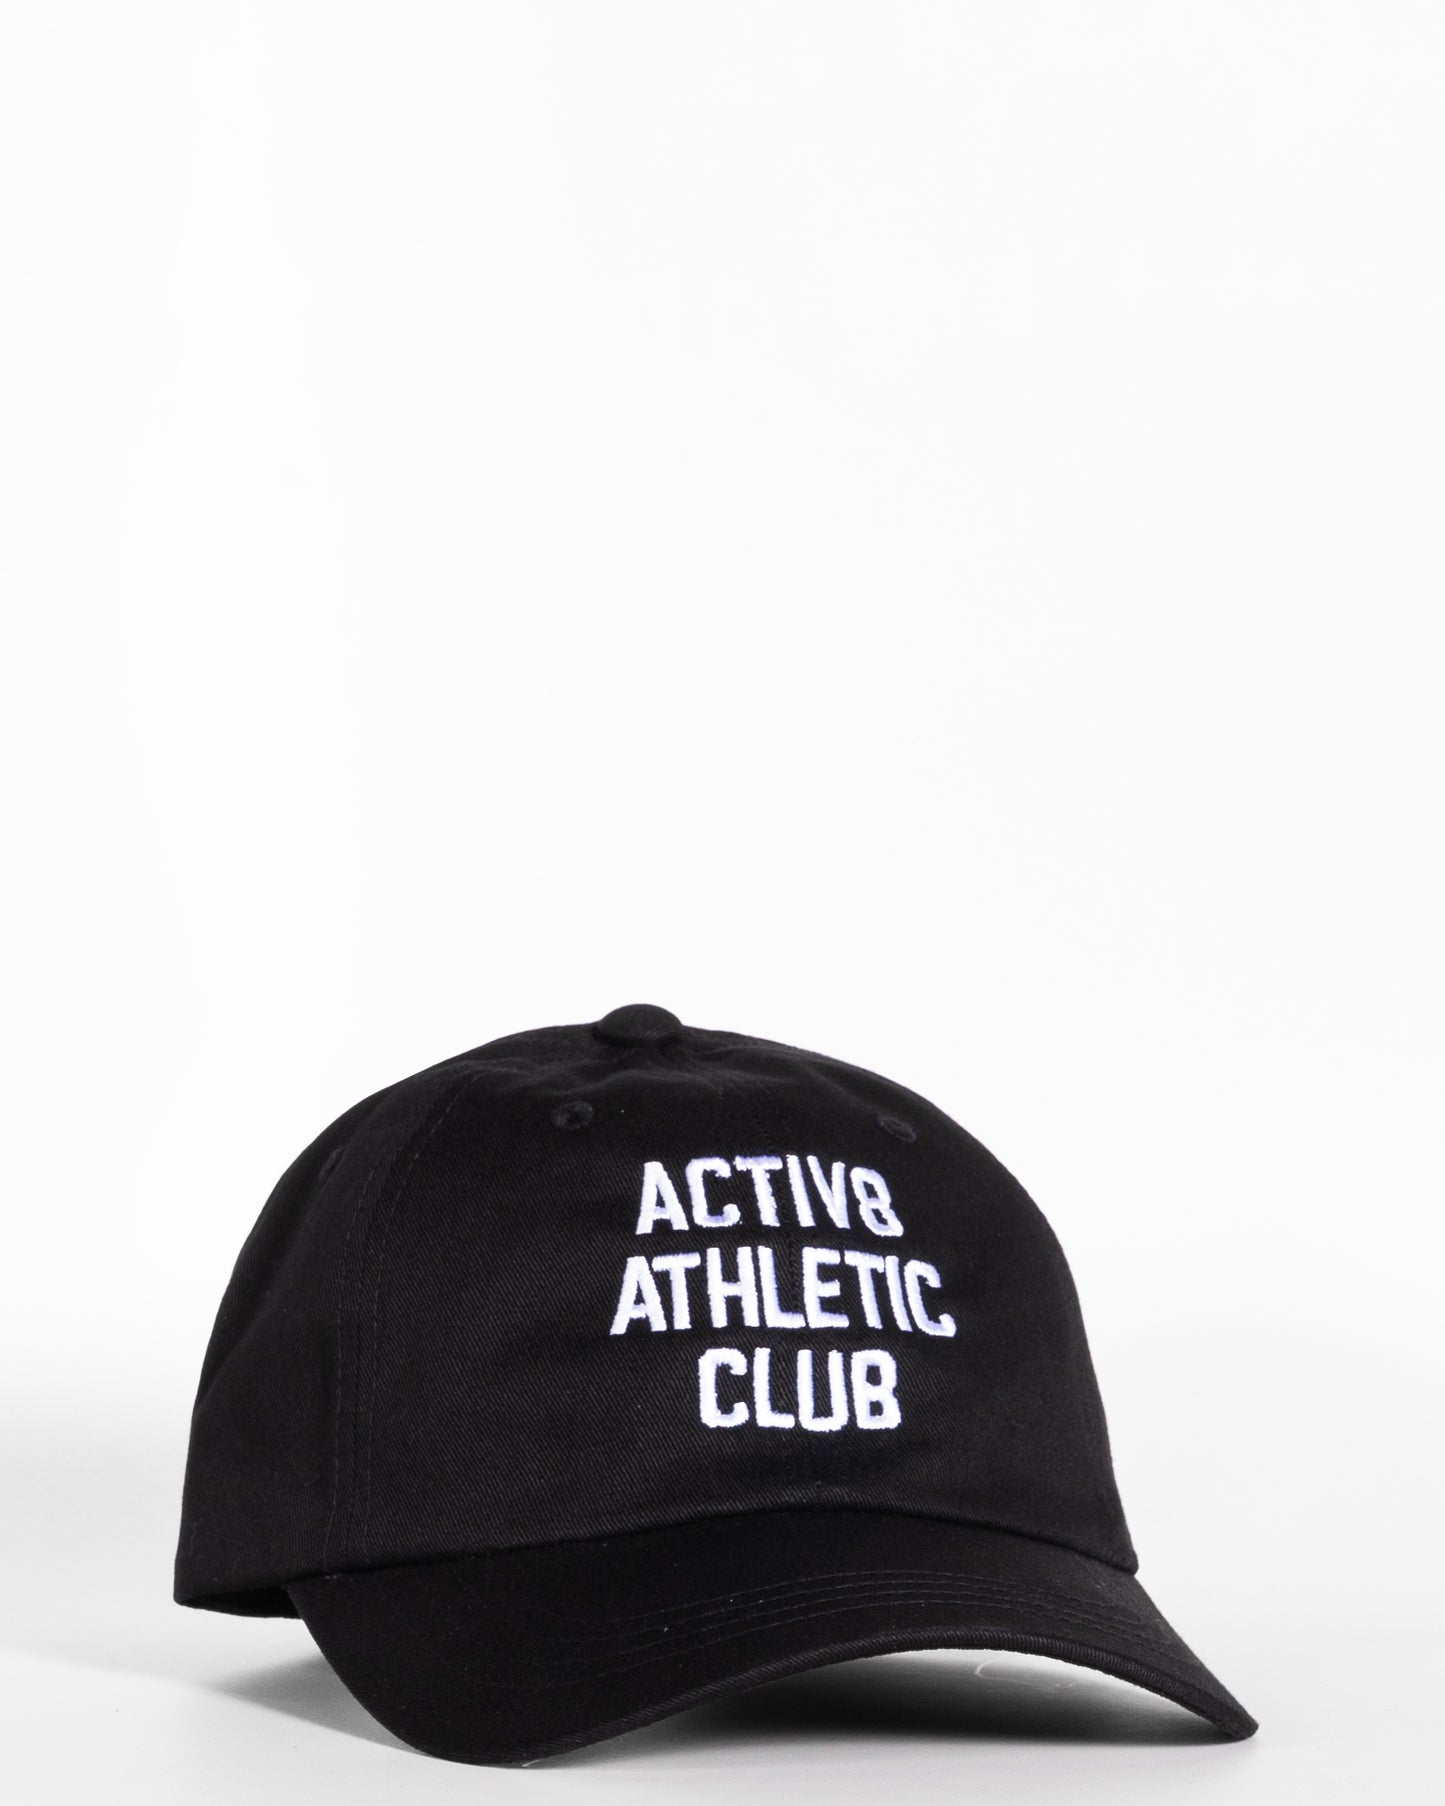 Black Dad Hat - Athletic Club Logo